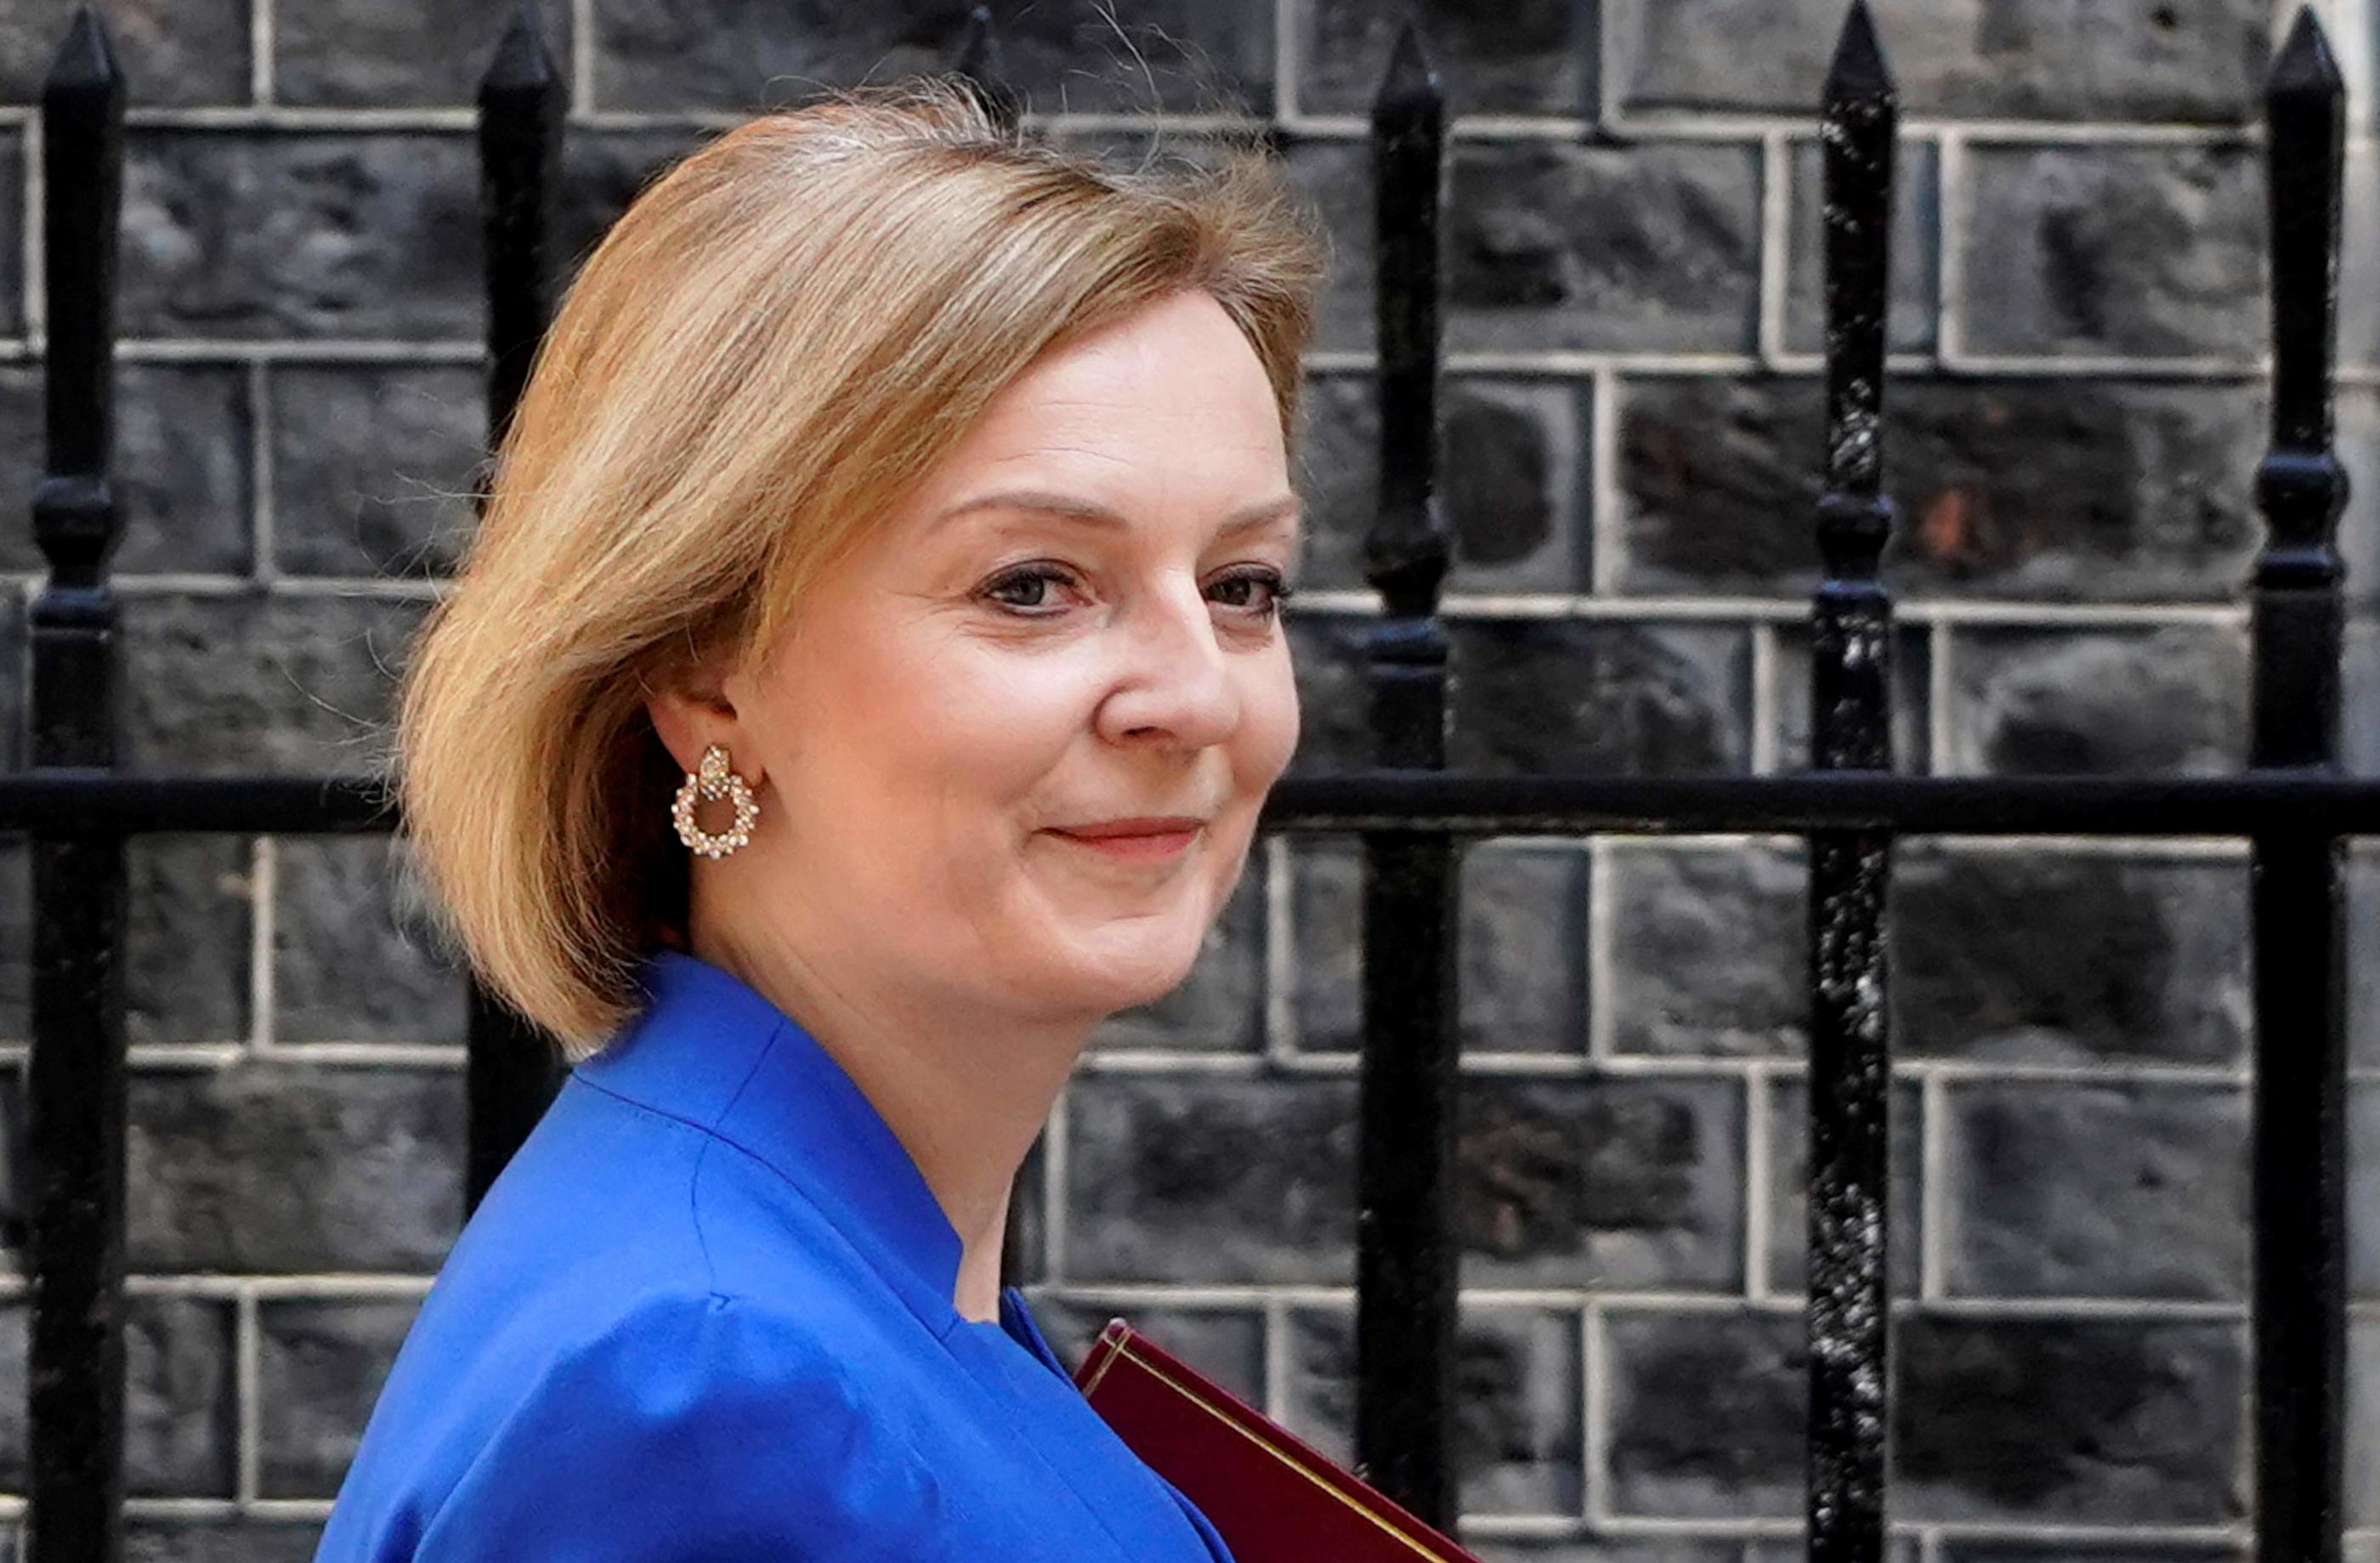 Ministre des affaires étrangères, Liz Truss, 47 ans, pourrait devenir la troisième femme à faire son entrée au 10 Downing Street après Margaret Thatcher et Theresa May. AFP/Niklas Halle'n